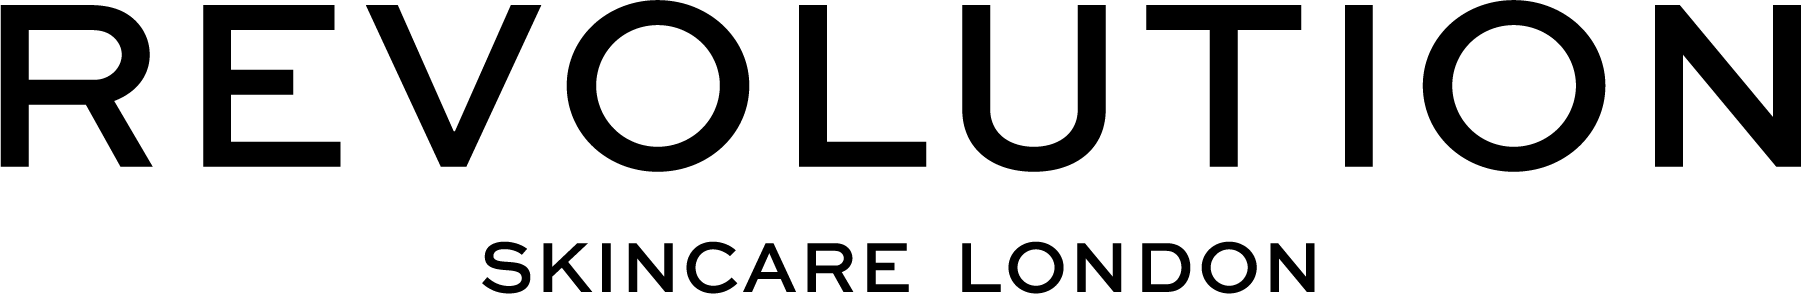 Logo de la marque du produit